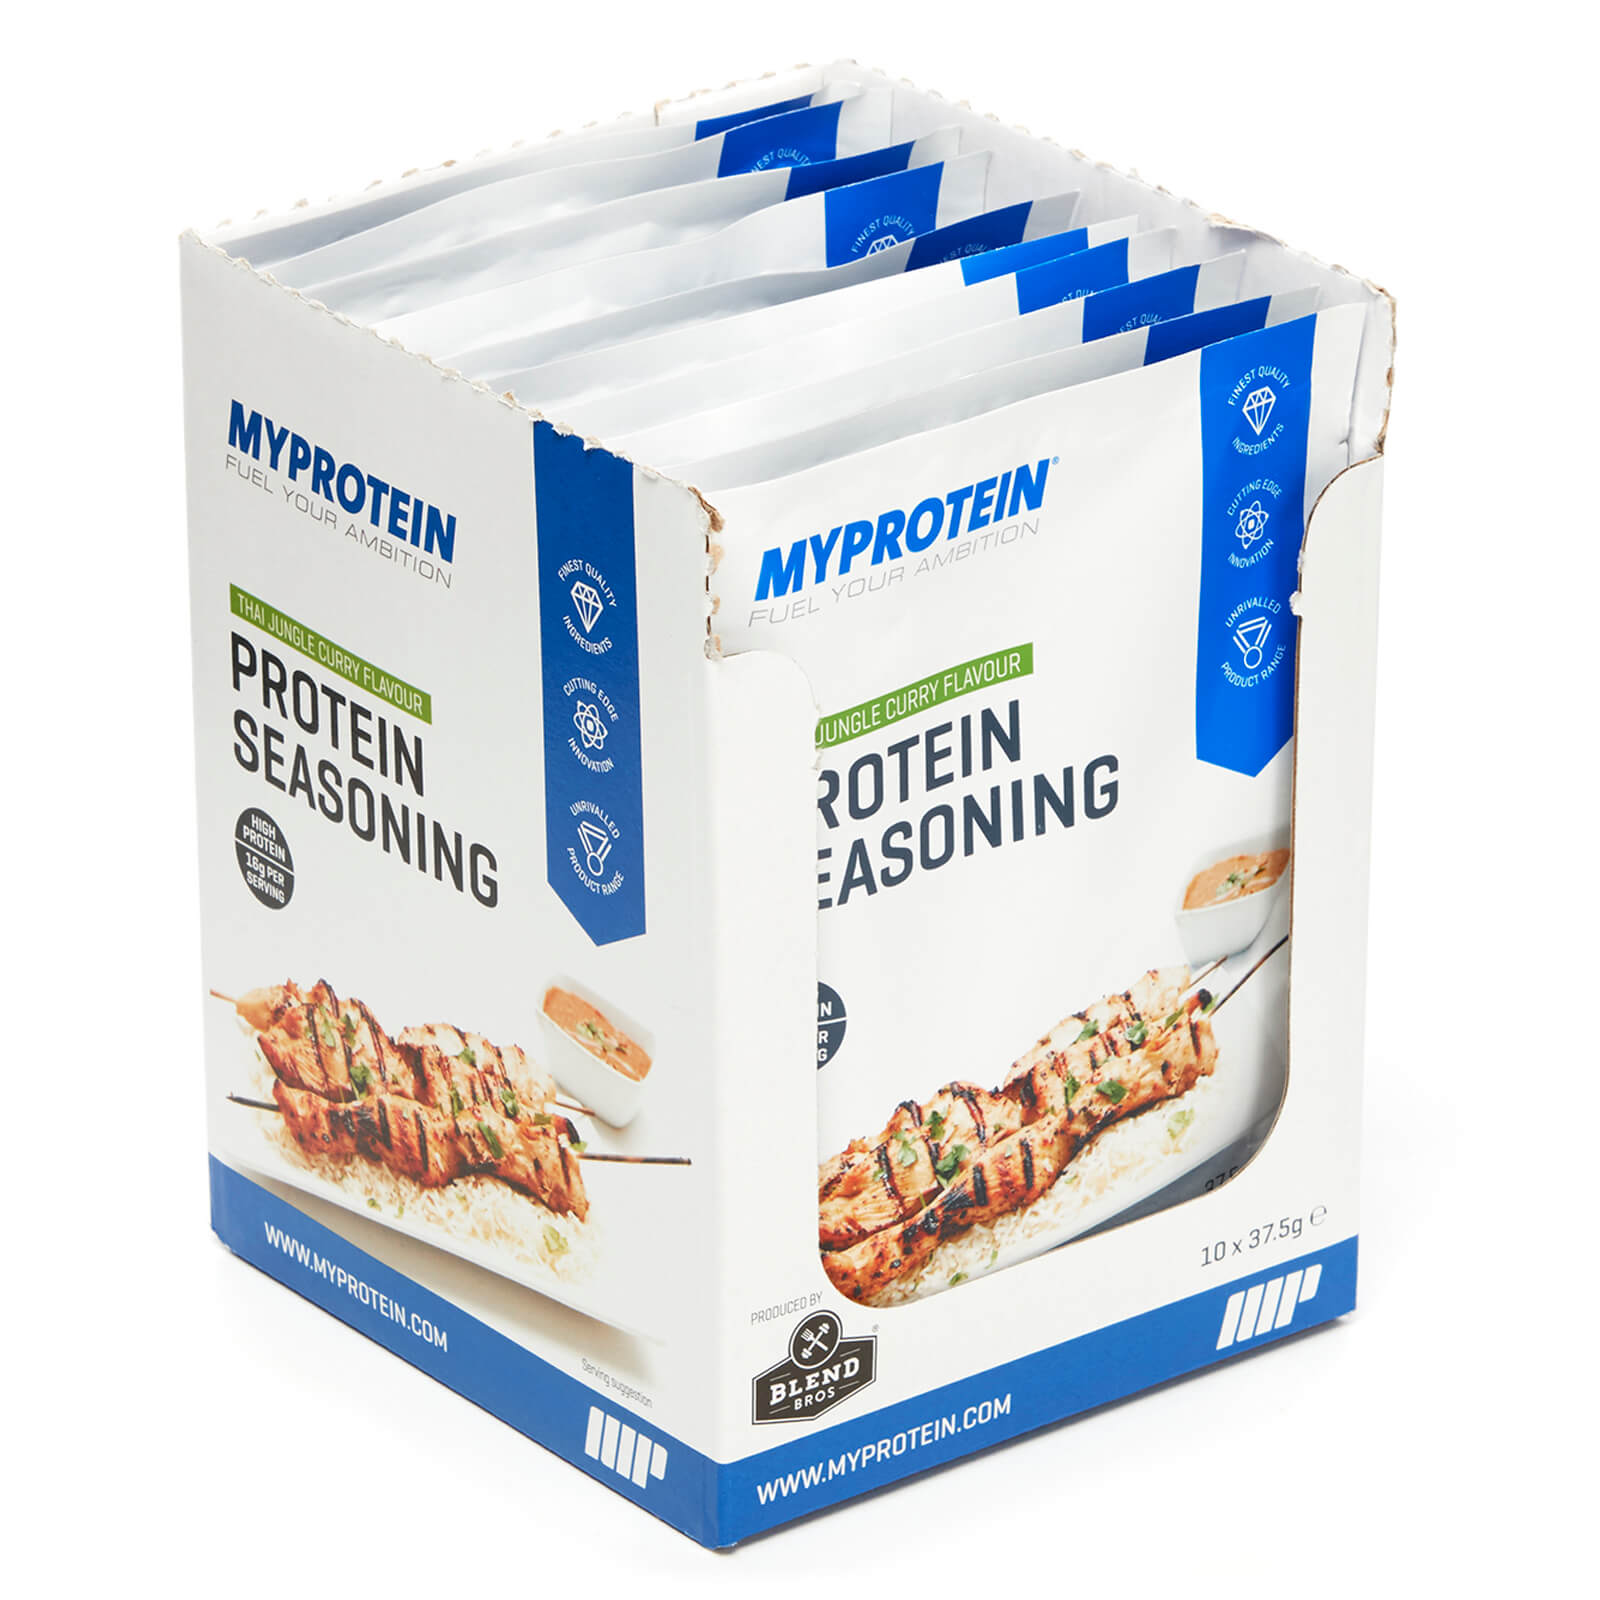 Myprotein Protein Seasoning